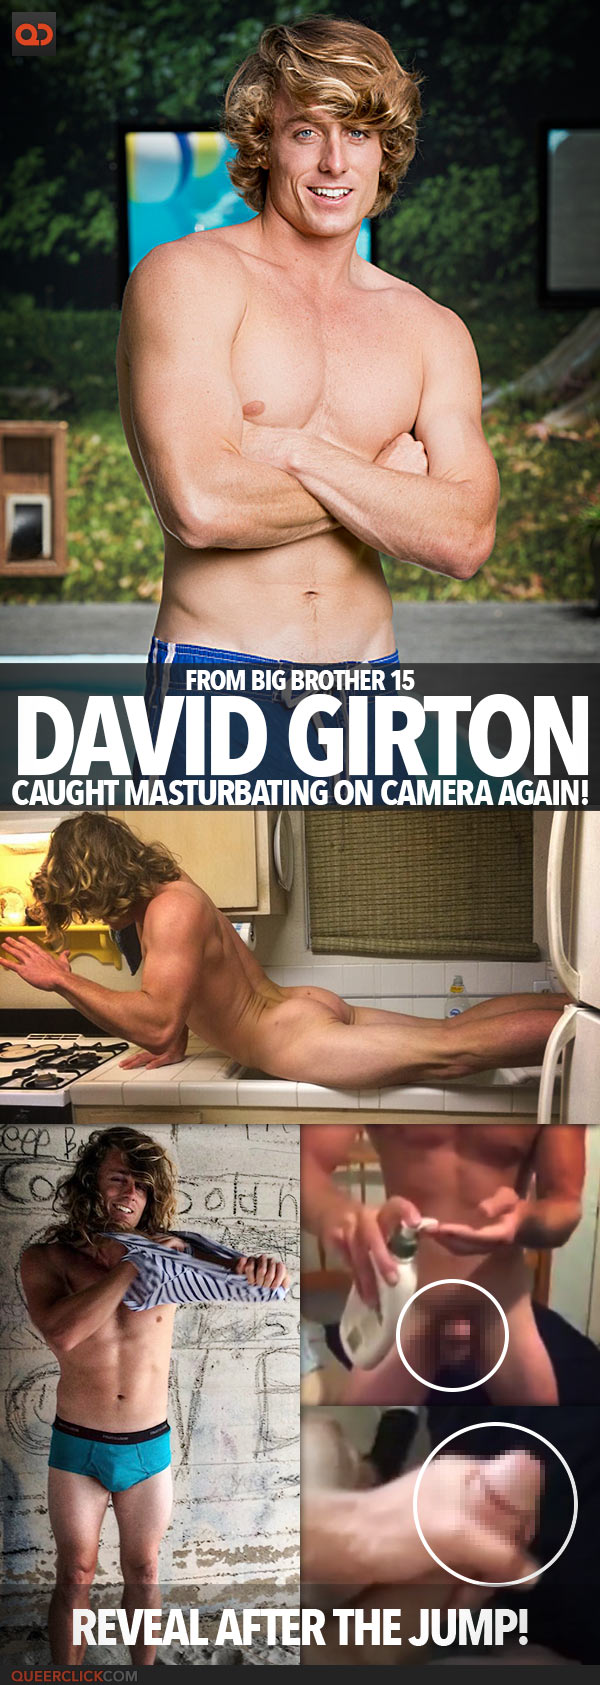 David Girton, From Big Brother 15, Caught Masturbating On Camera Again!